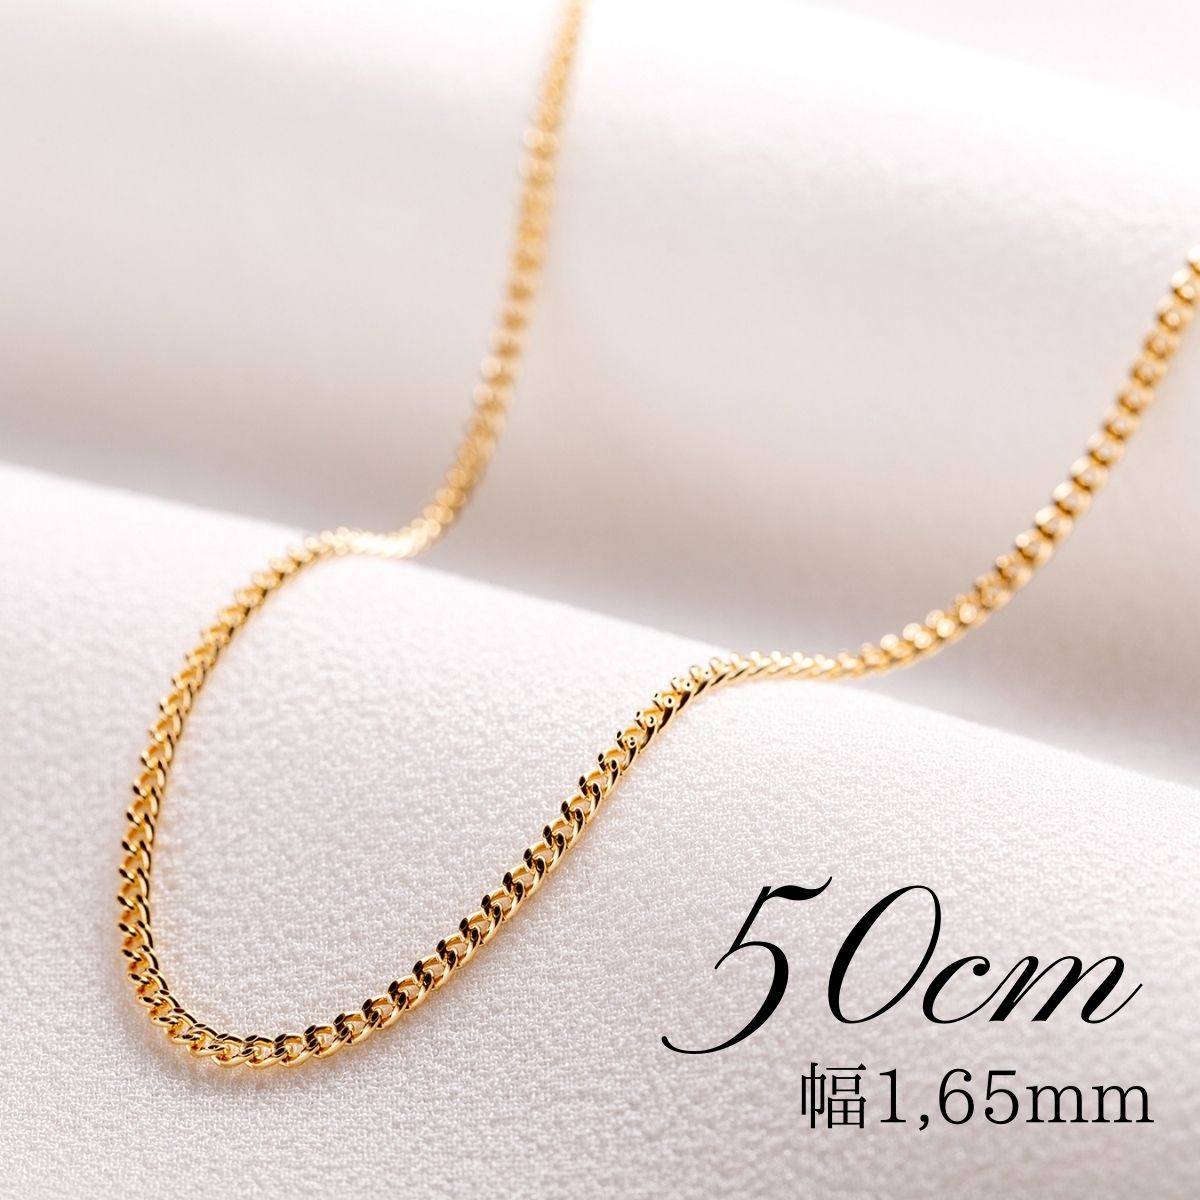 売店 45cm 《最高品質 日本製18金》喜平ネックレスチェーン 1,8g K18